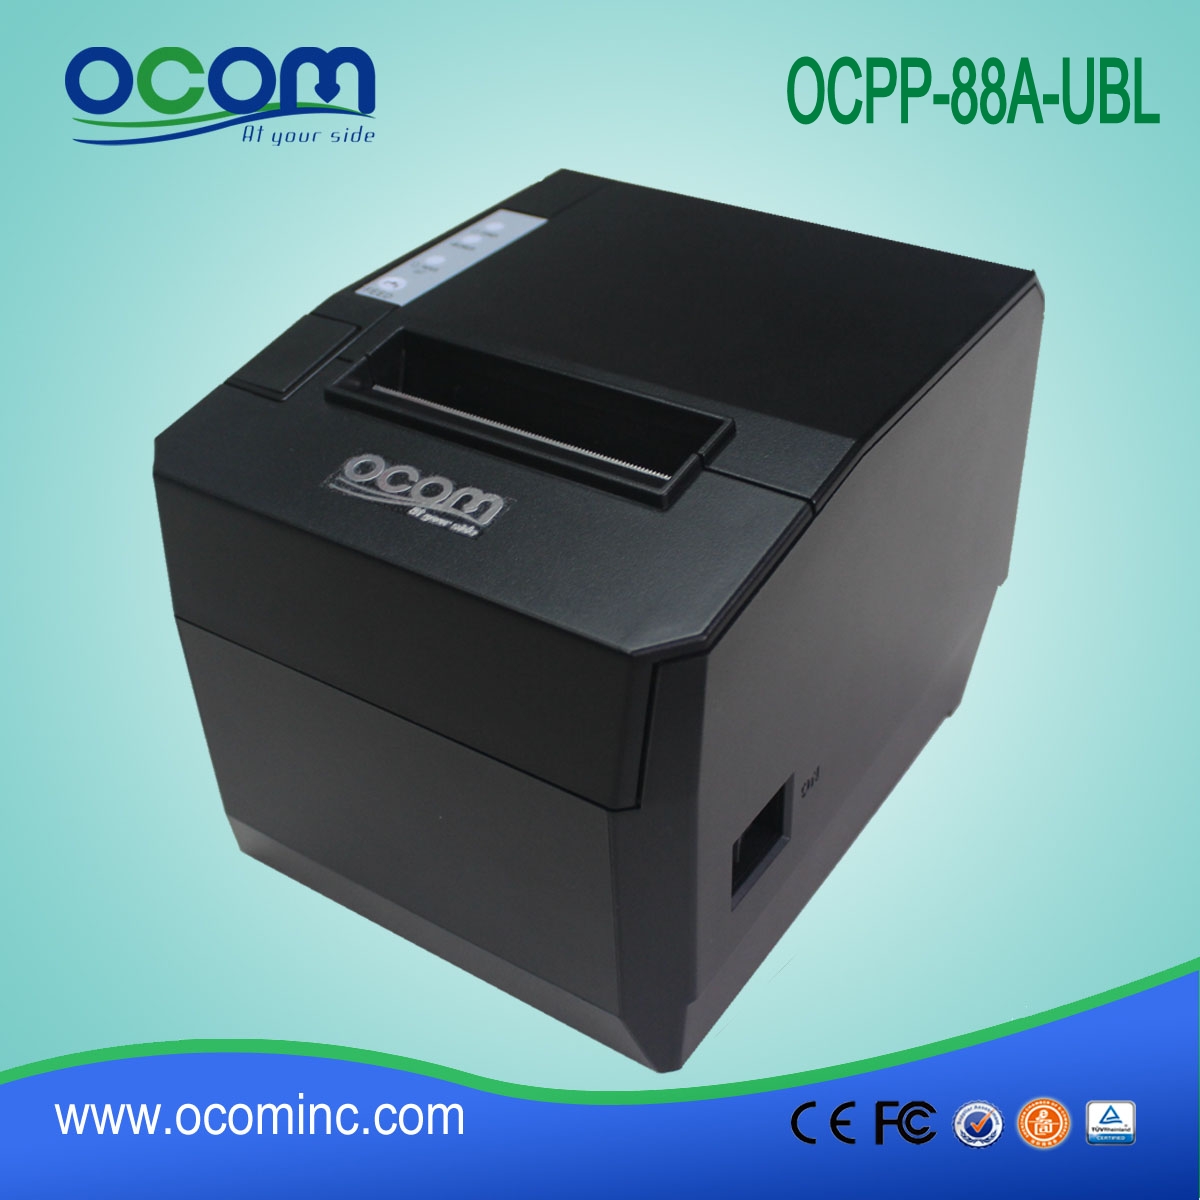 OCPP-88A Eenvoudig op te zetten restaurant 80 mm thermische bonprinter met zelfsnijding